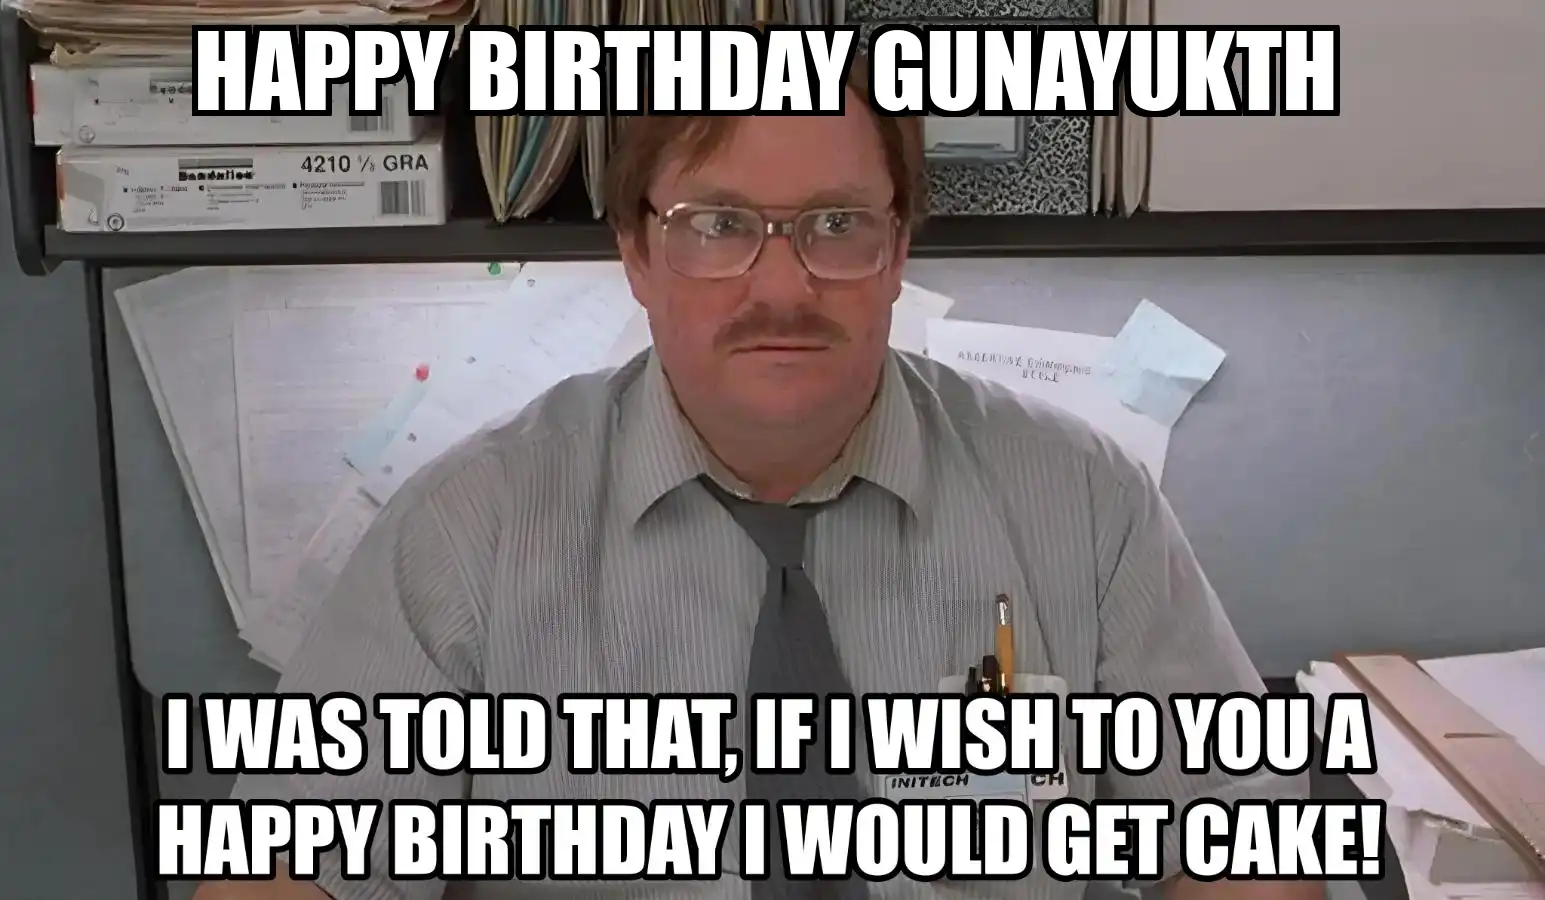 Happy Birthday Gunayukth I Would Get A Cake Meme